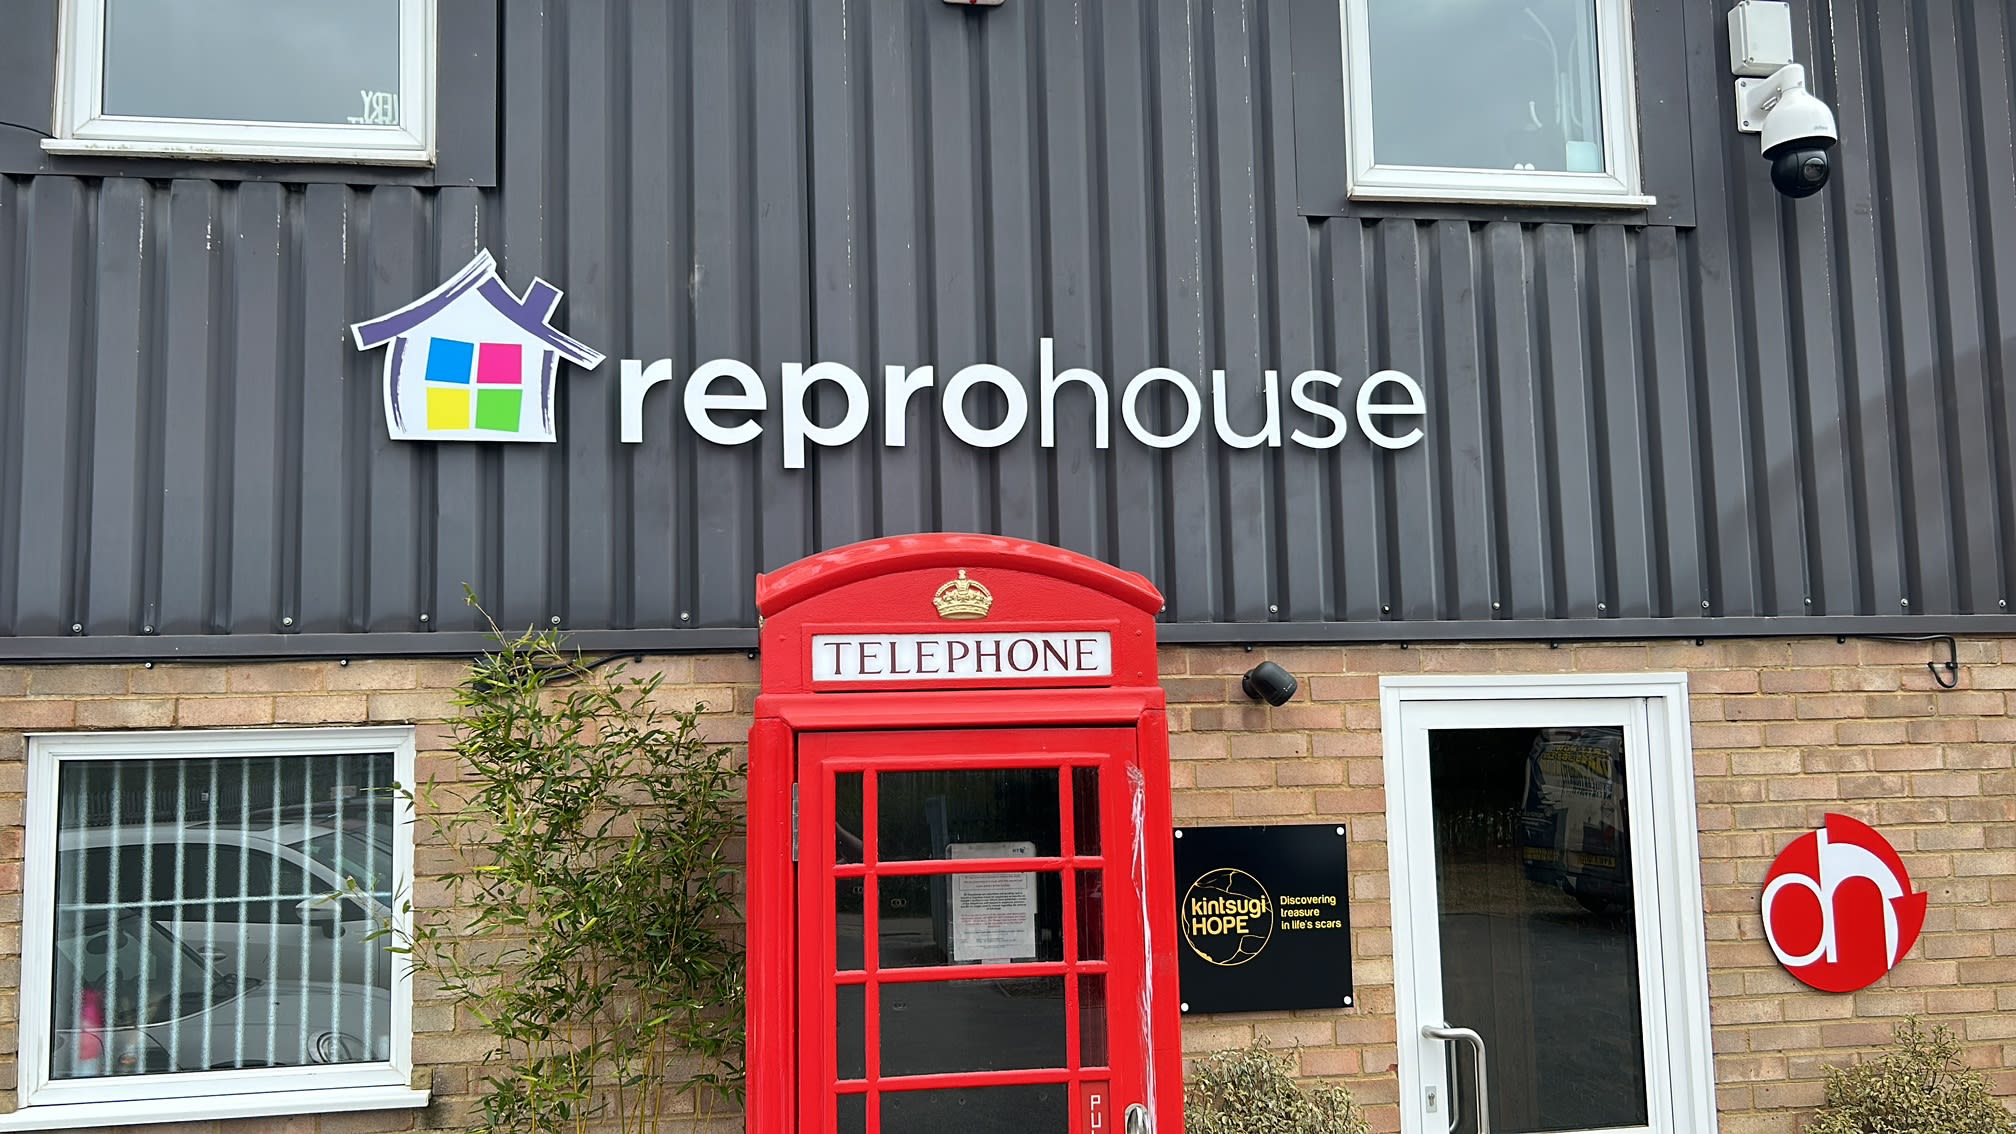 Images Reprohouse Ltd